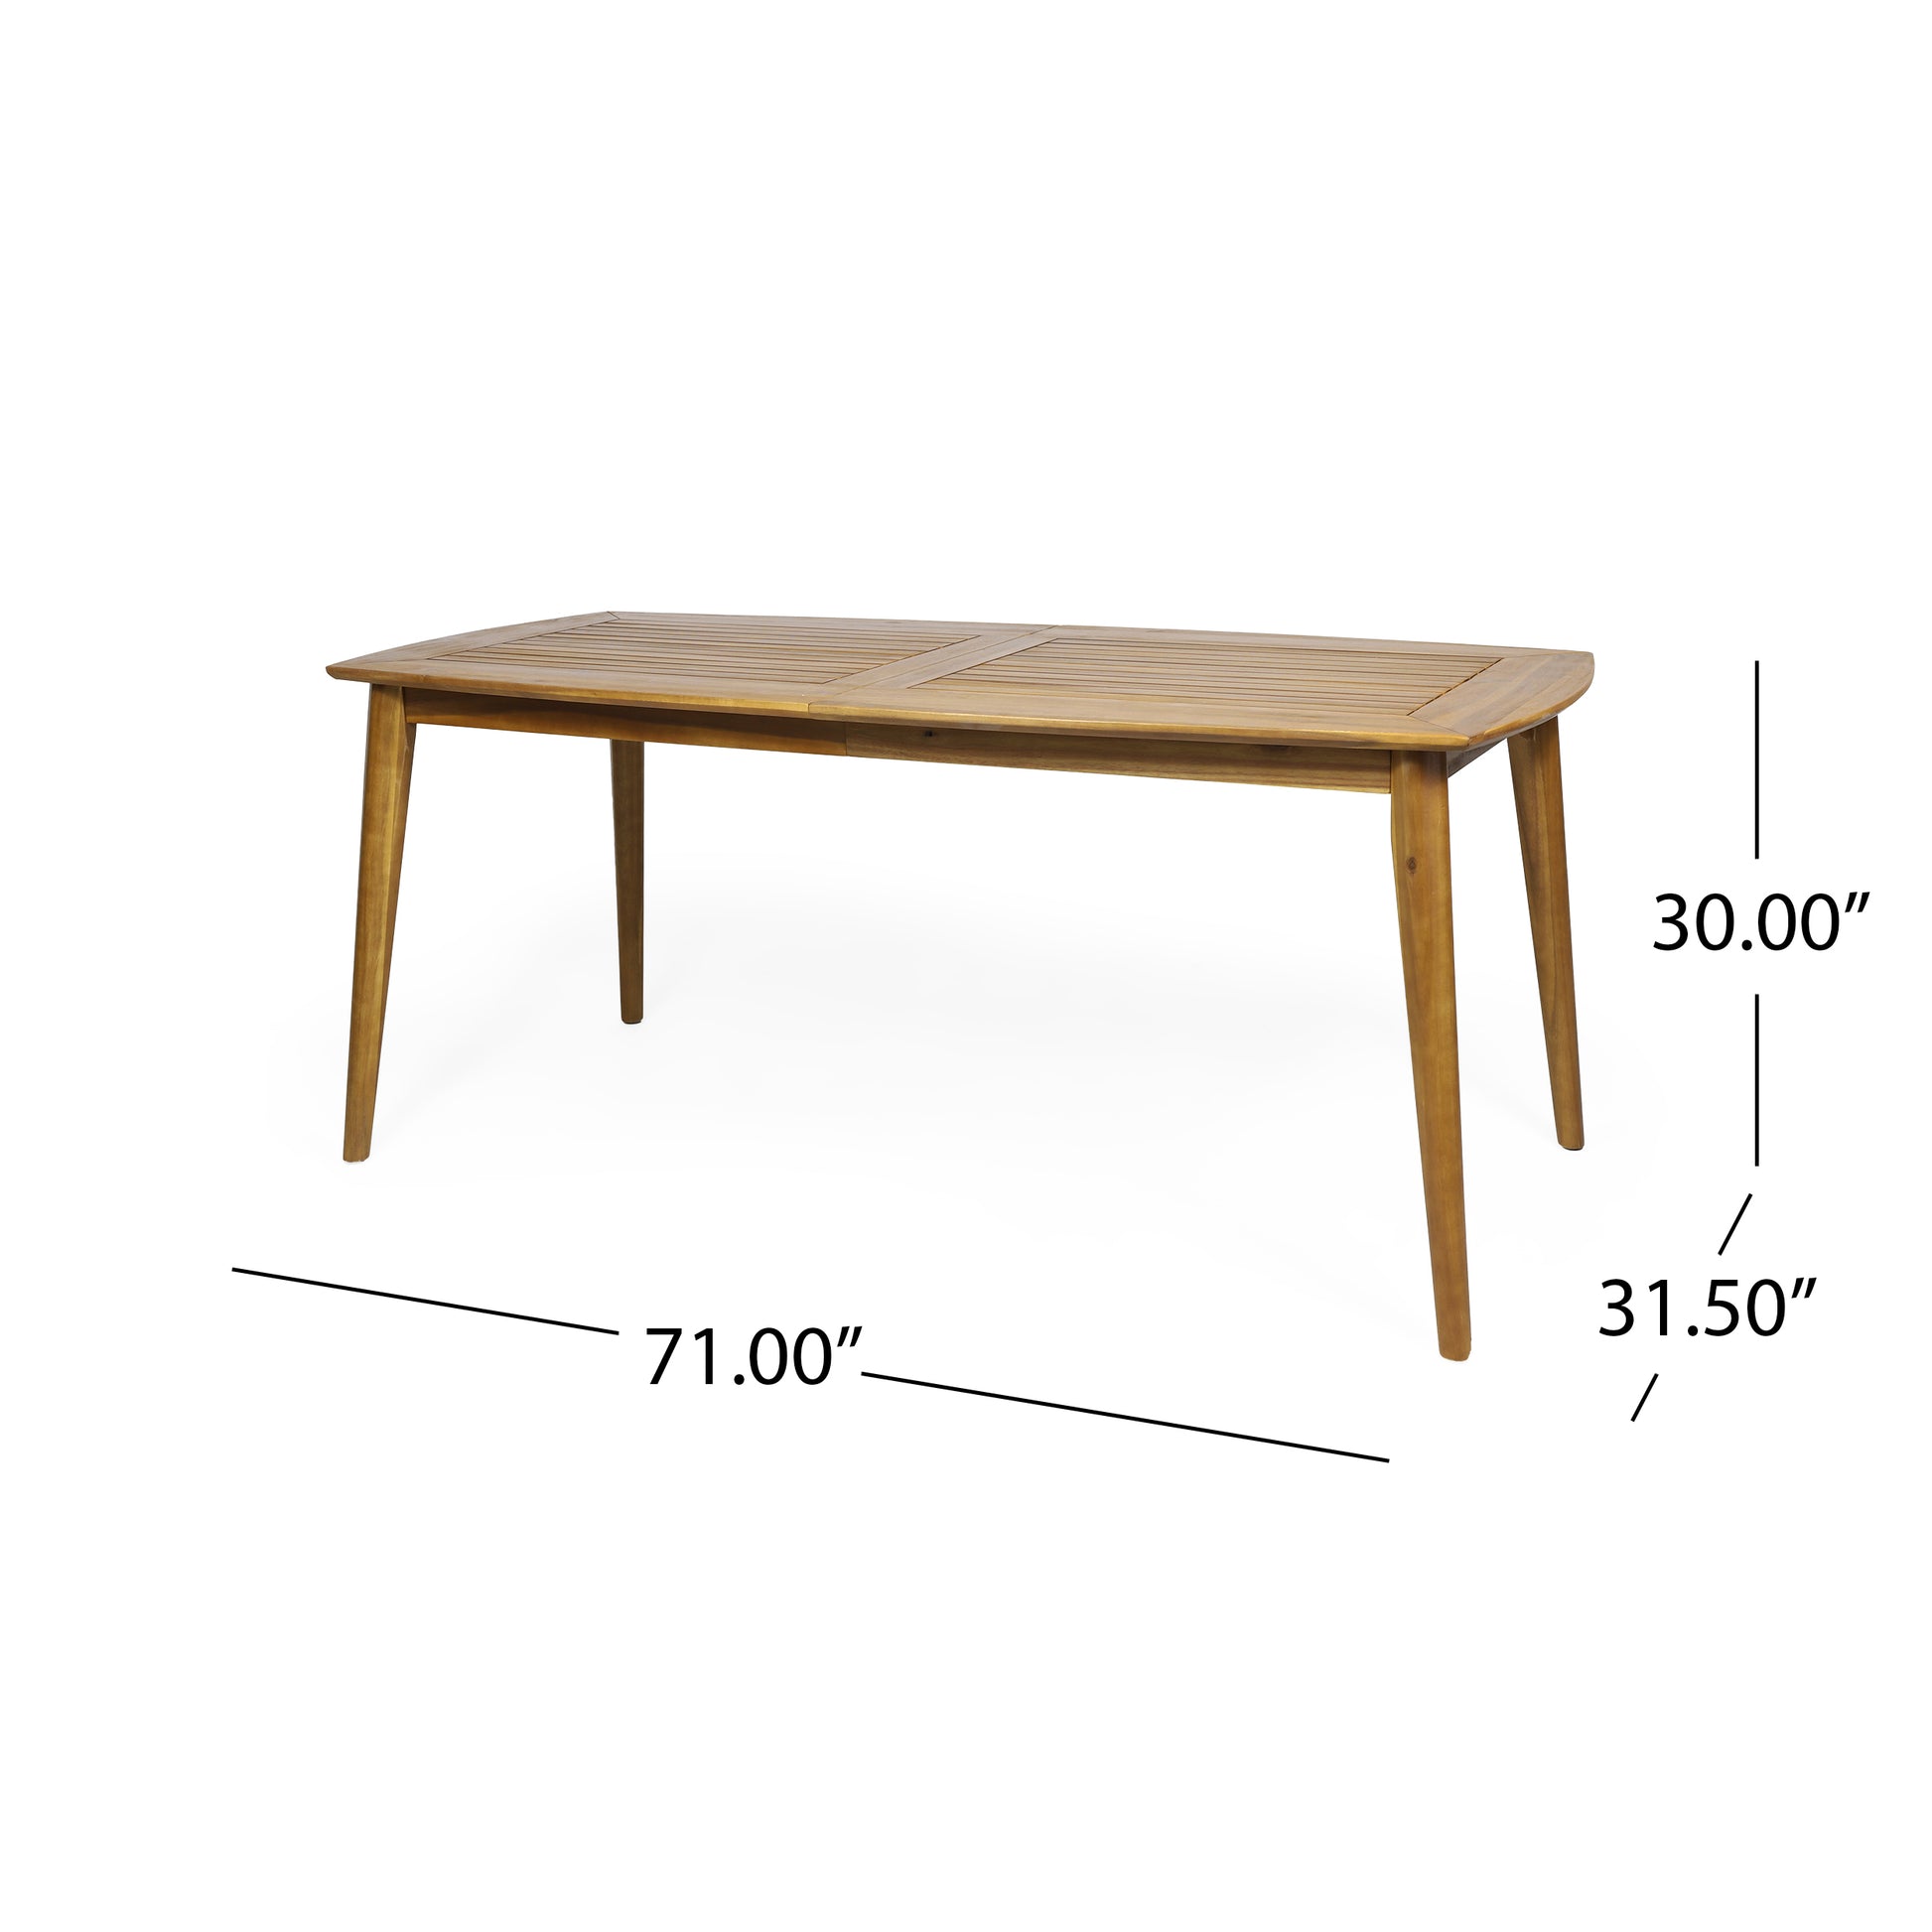 Artesia Dining Table - Teak Wood